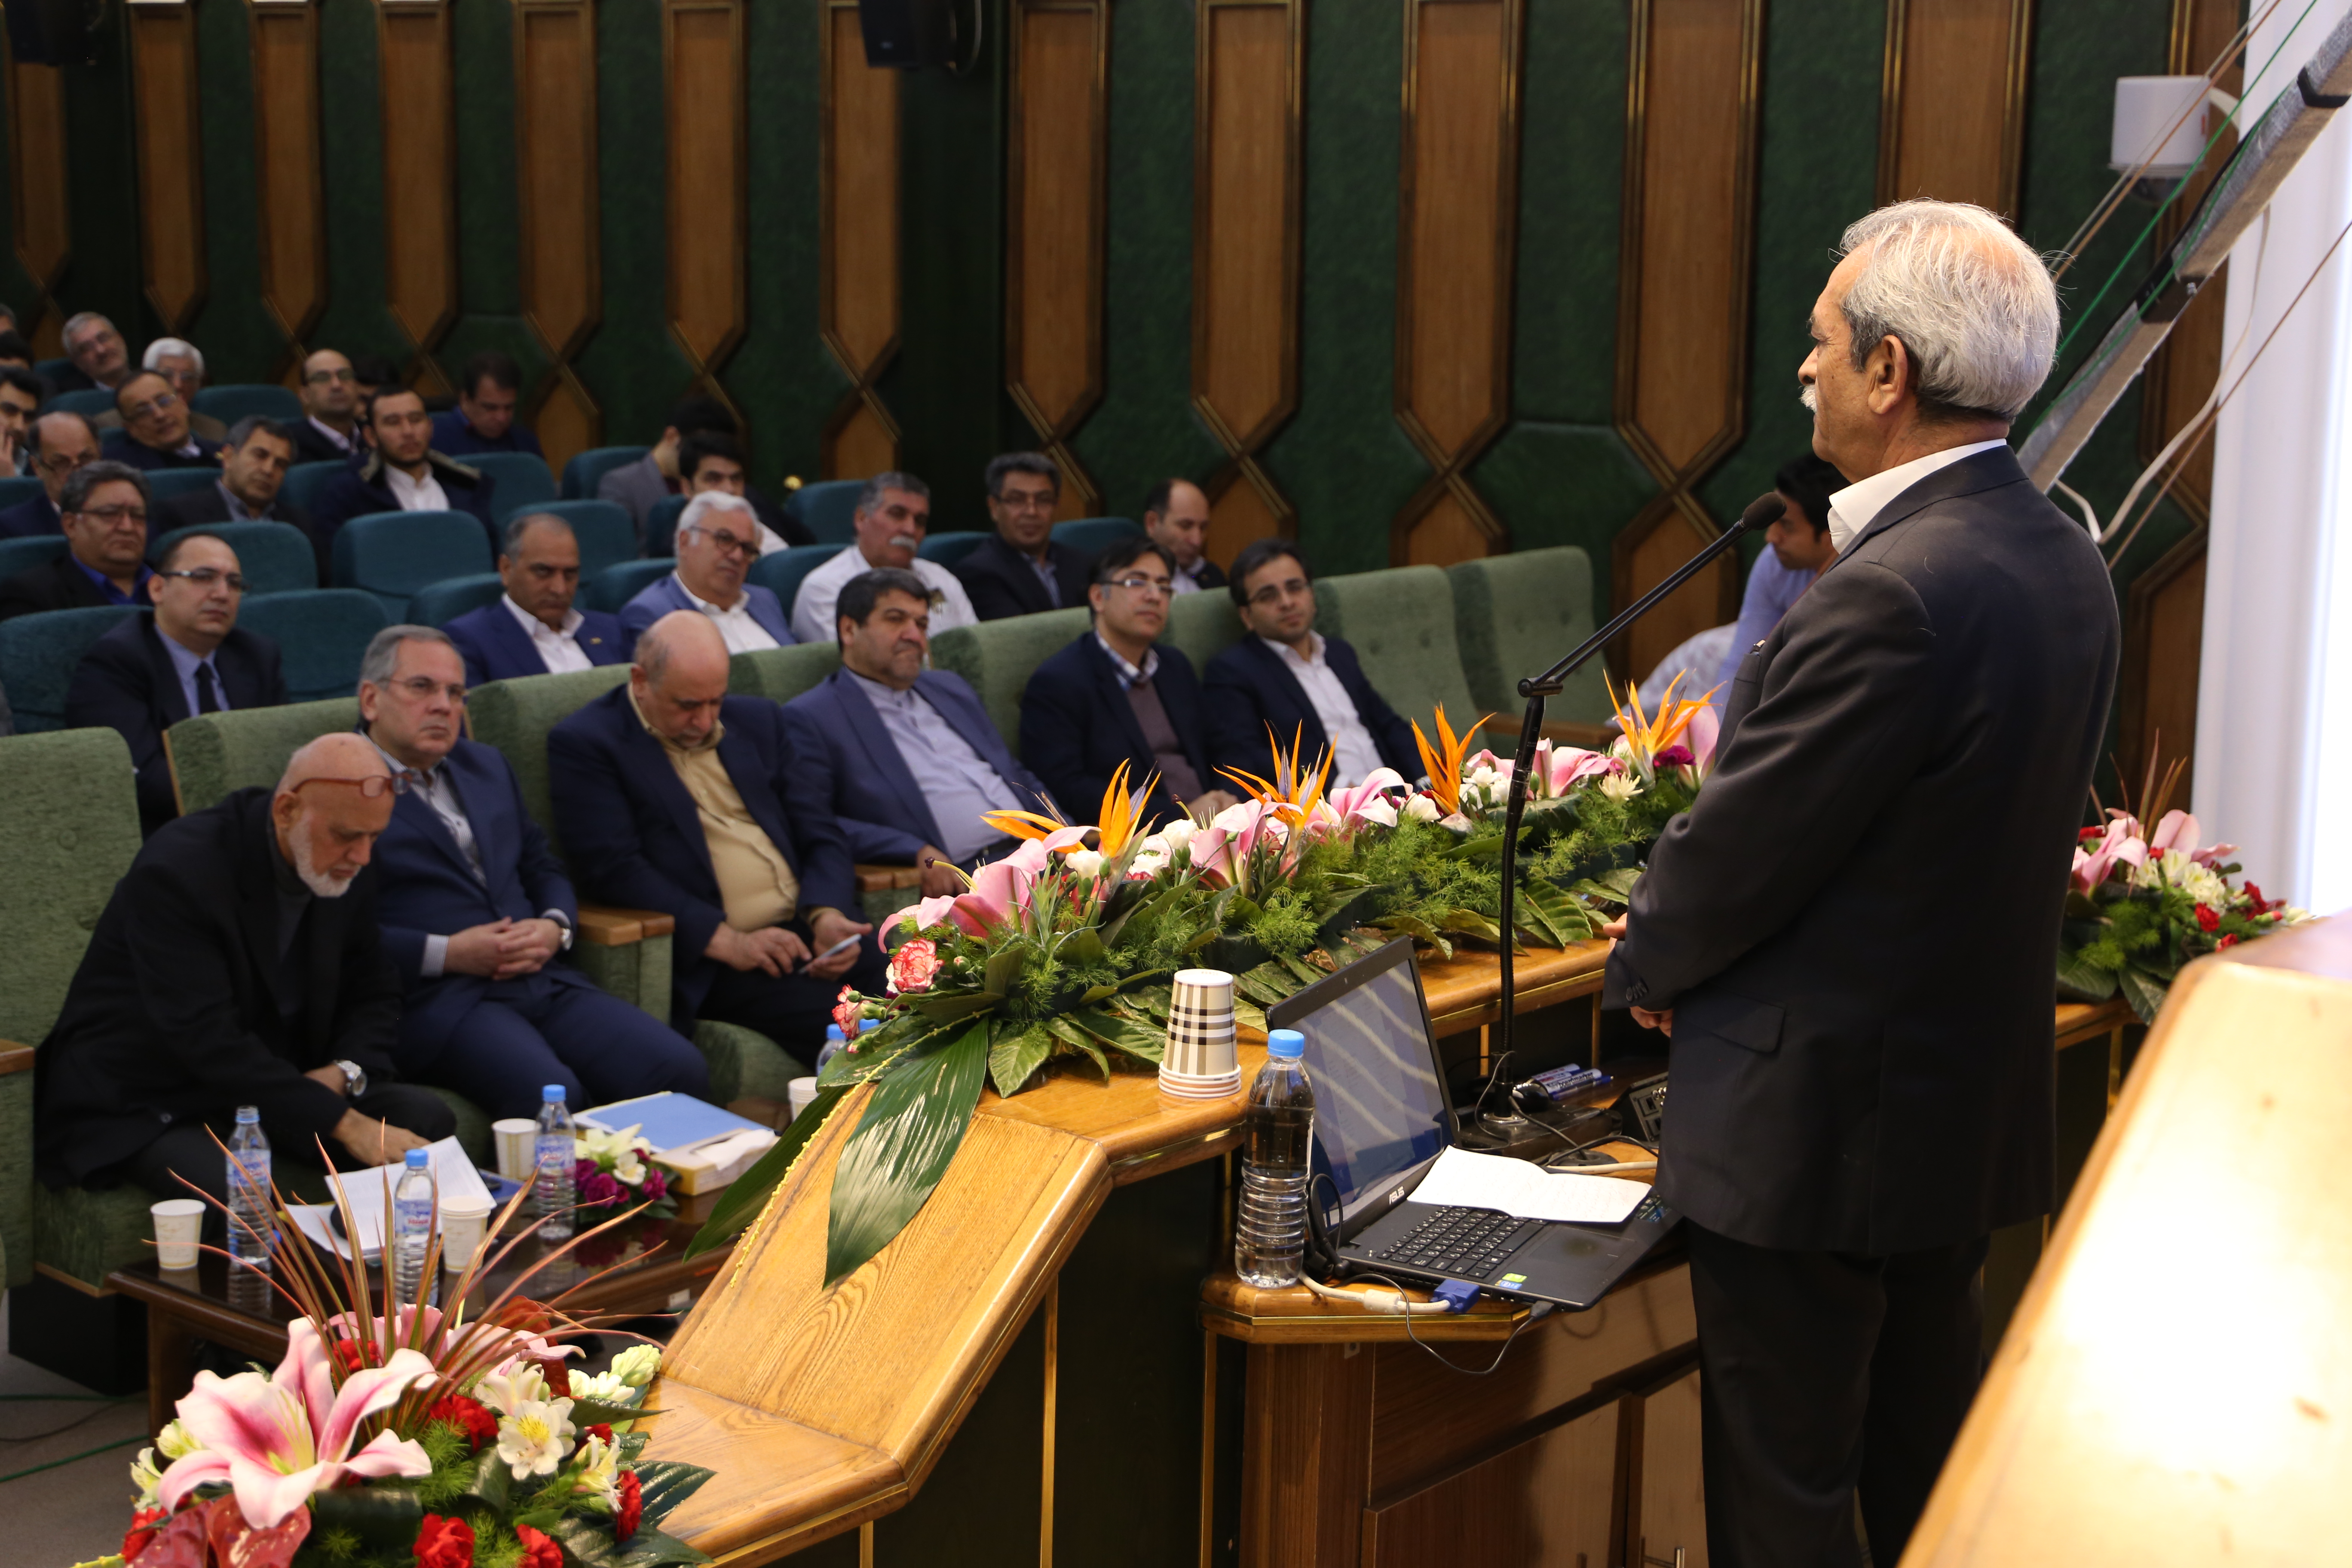 گزارشی از همایش دو روزه «توسعه پایدار» در مشهد که با حضور اقتصاددانان برجسته برگزار شد